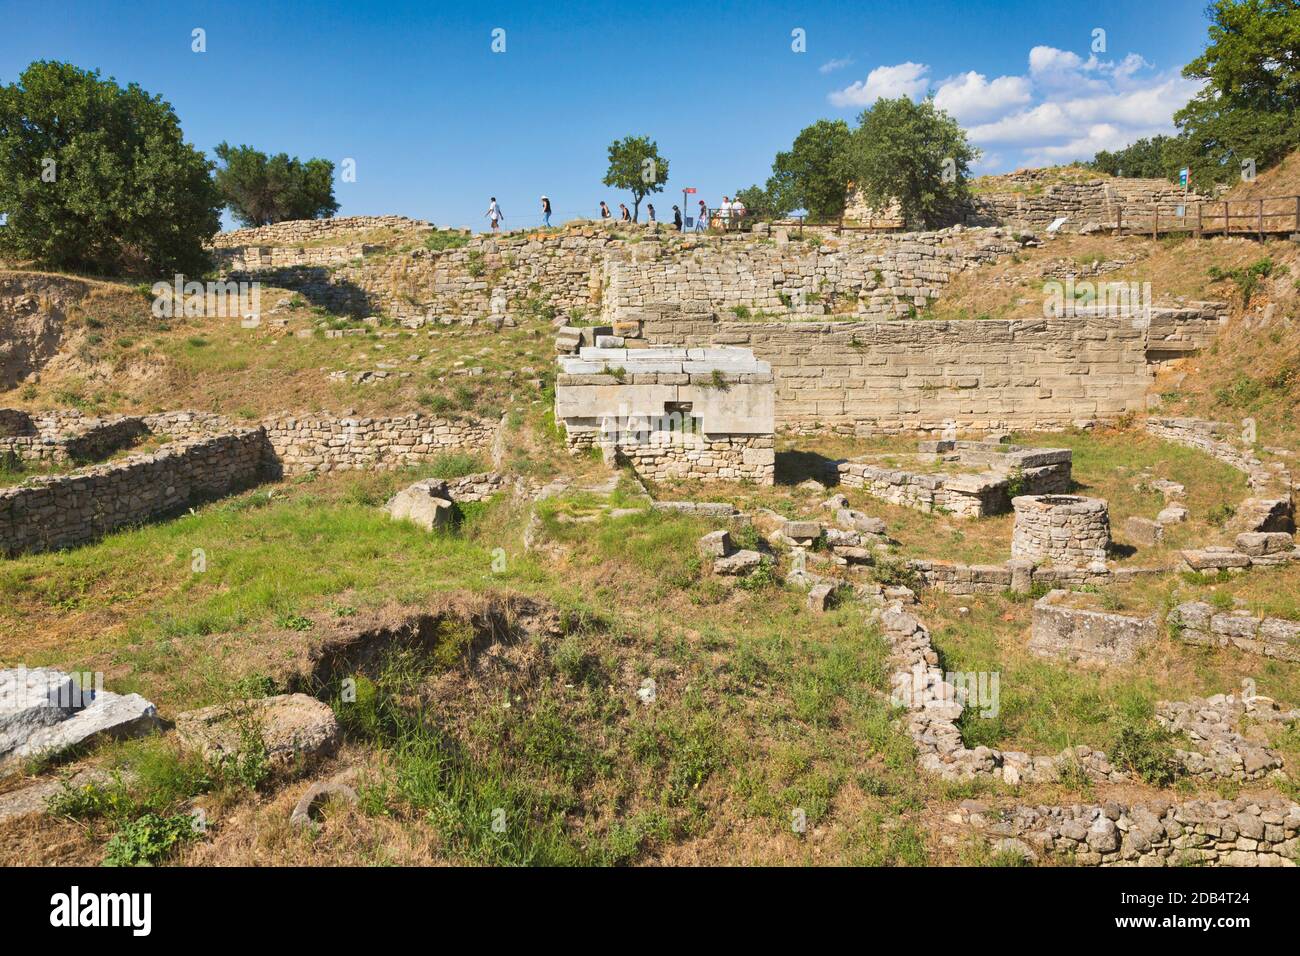 Troy, province de Çanakkale, Turquie. Troy est un site classé au patrimoine mondial de l'UNESCO. Groupe de visiteurs marchant dans les ruines. Banque D'Images